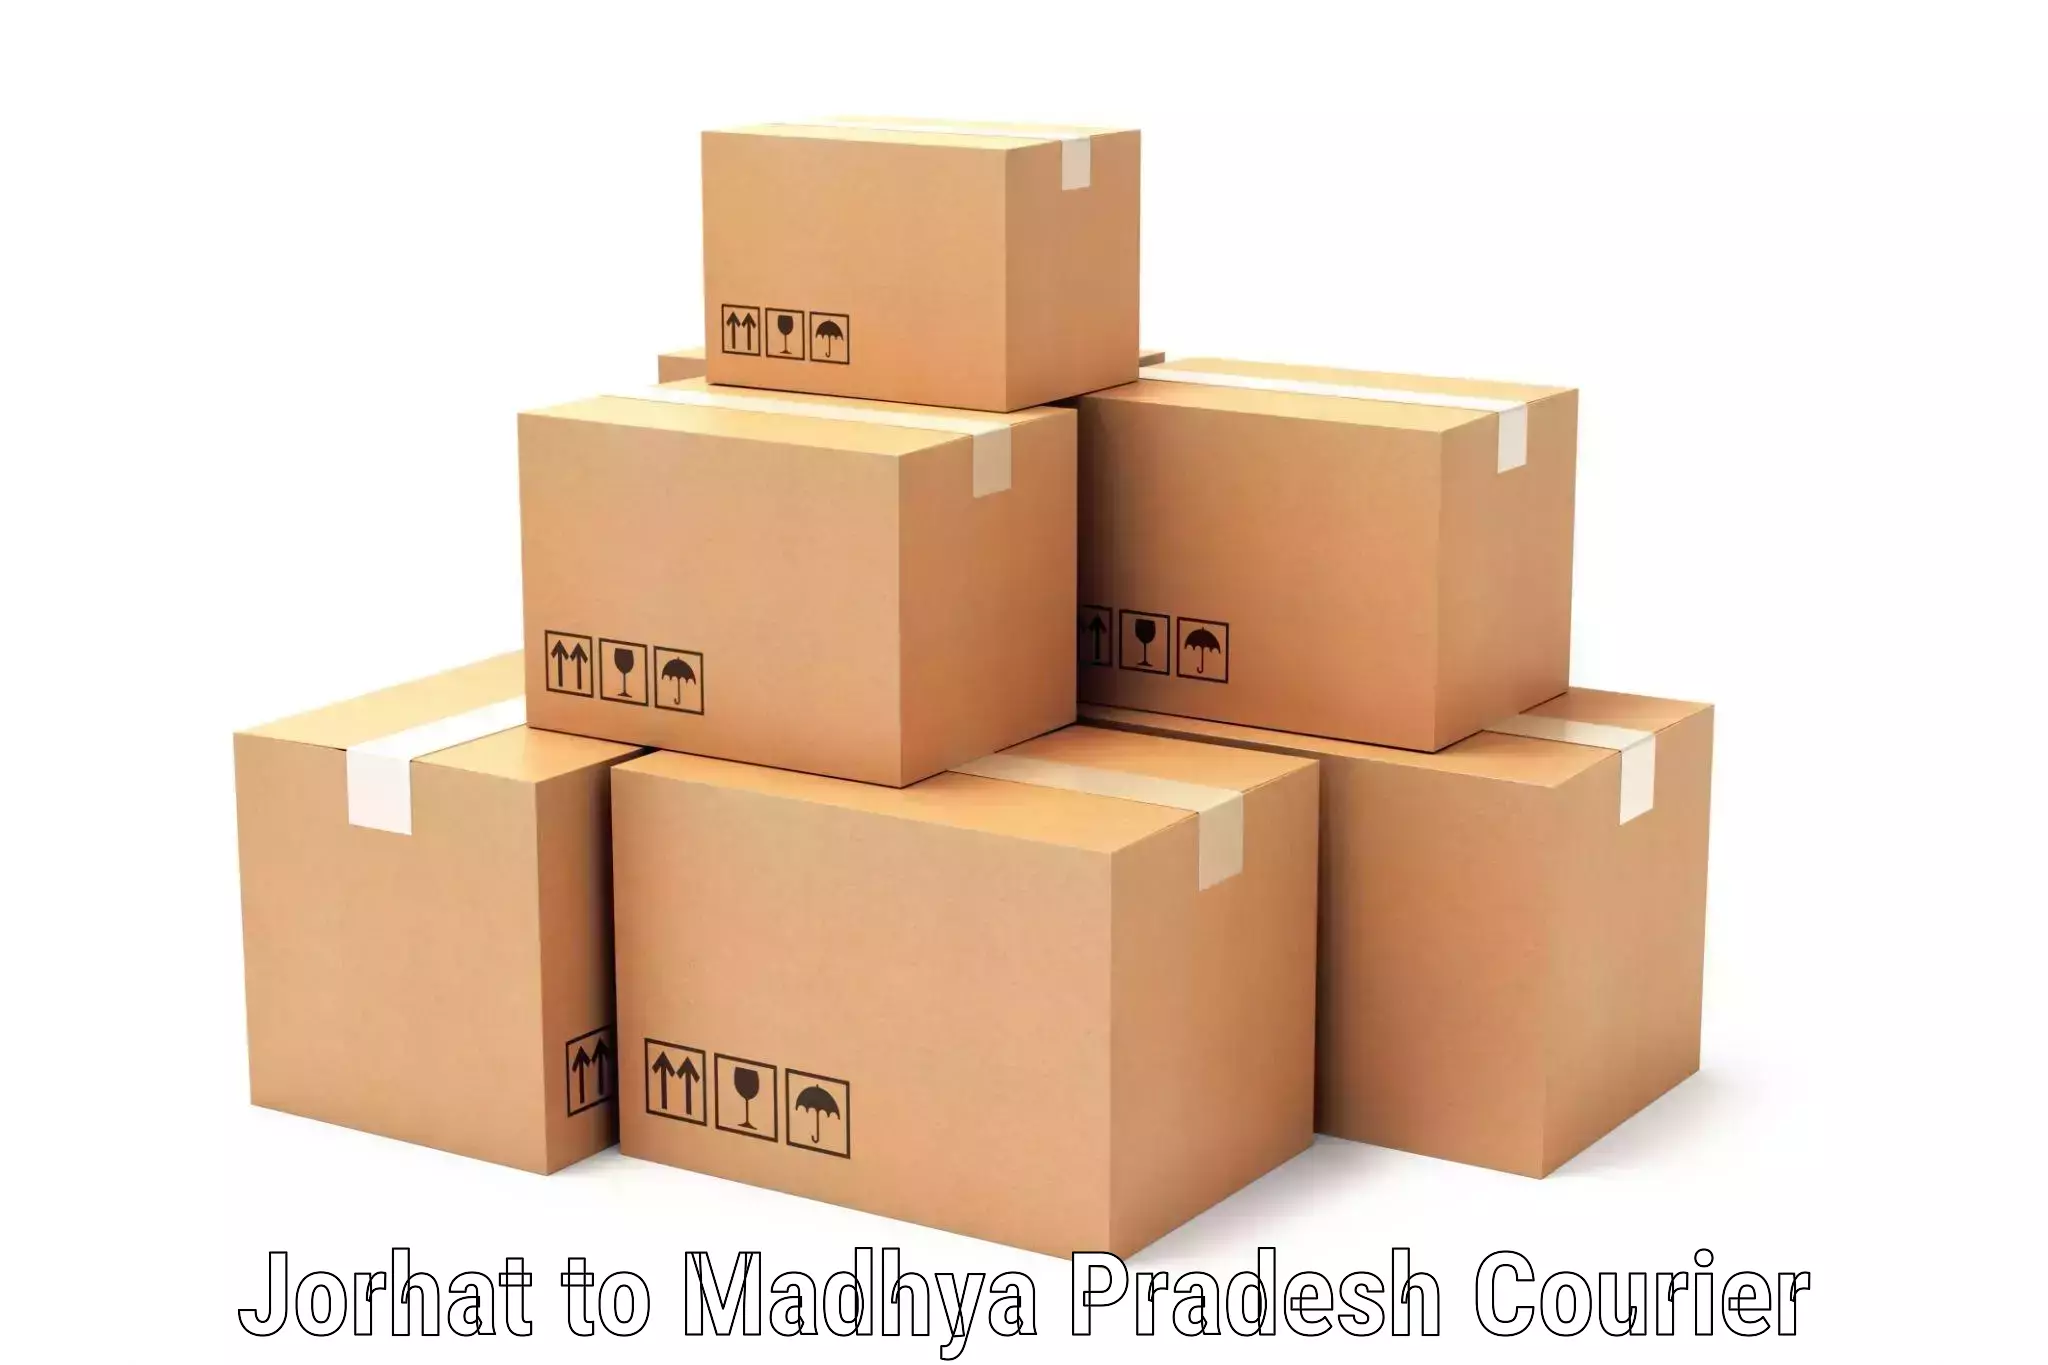 Specialized shipment handling Jorhat to Madhya Pradesh